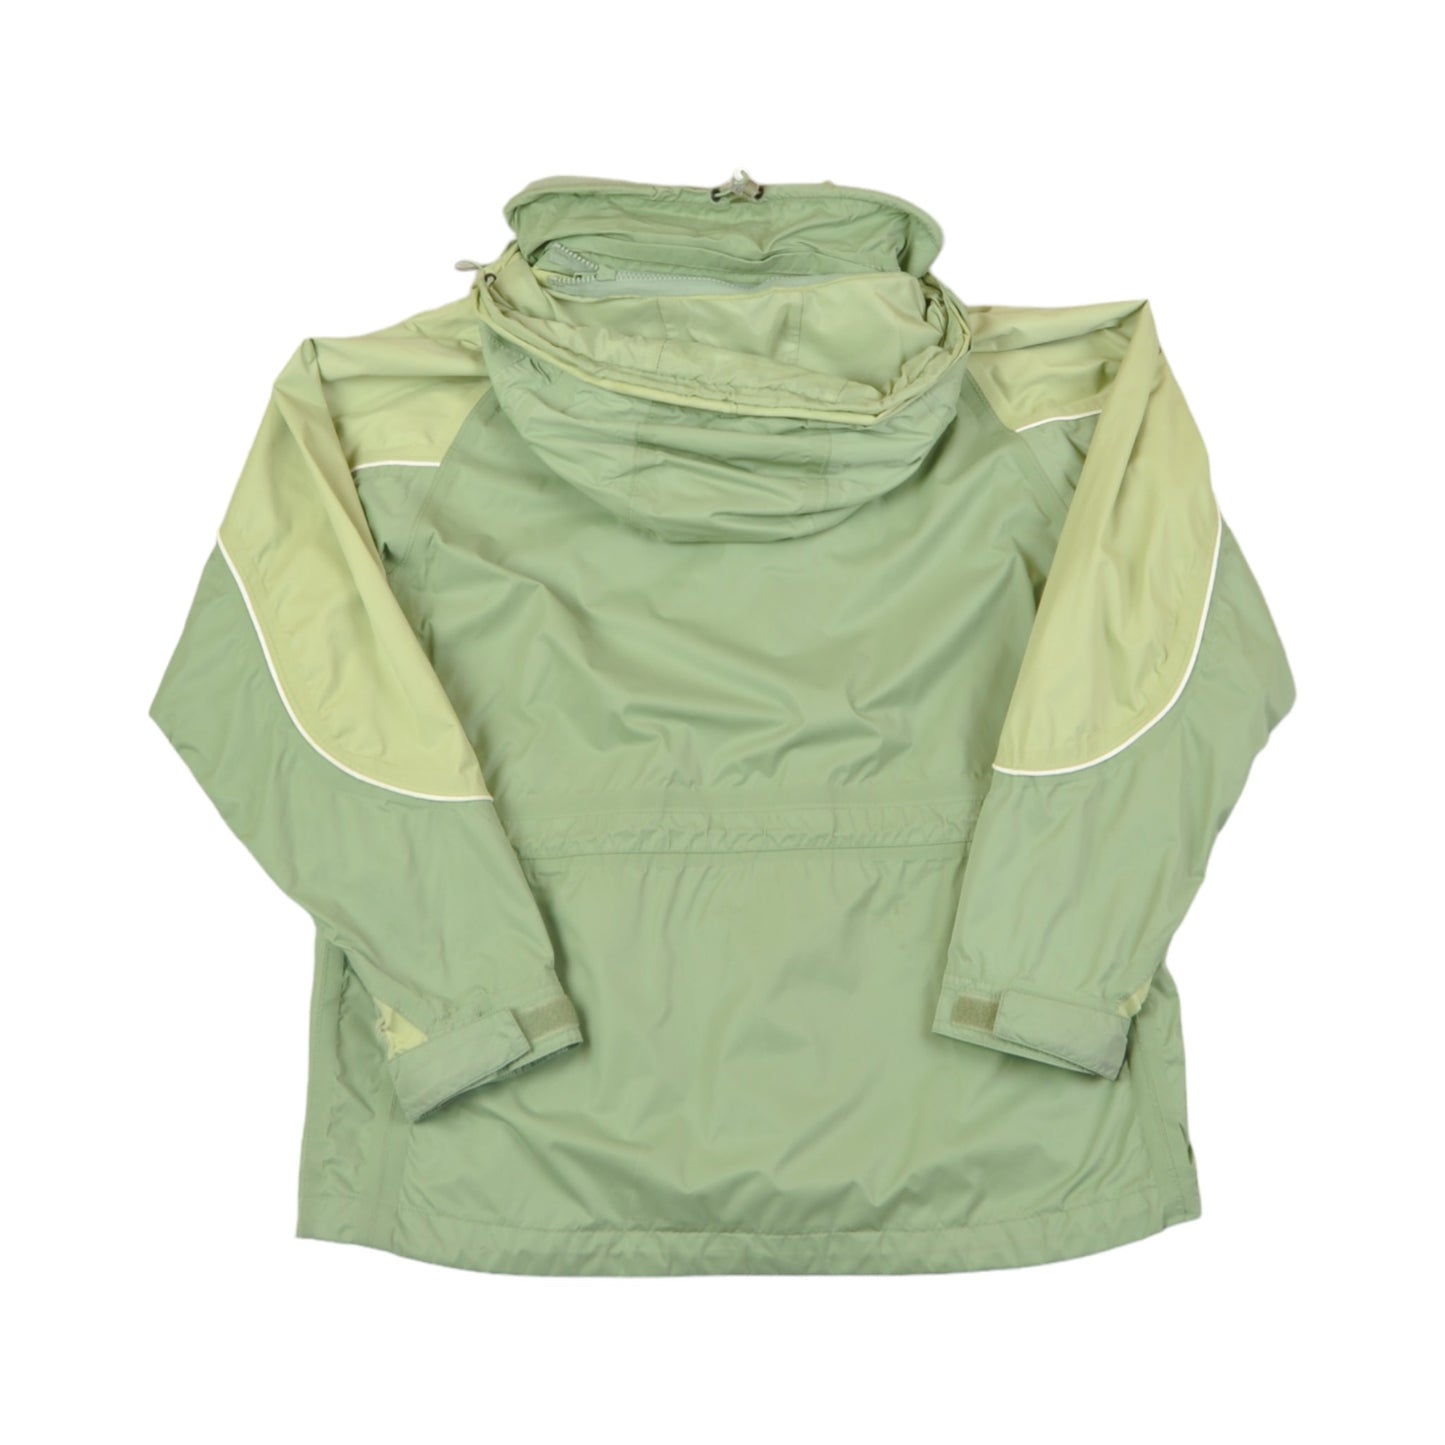 Vintage Caleba's Jacket Waterproof Green Ladies Medium